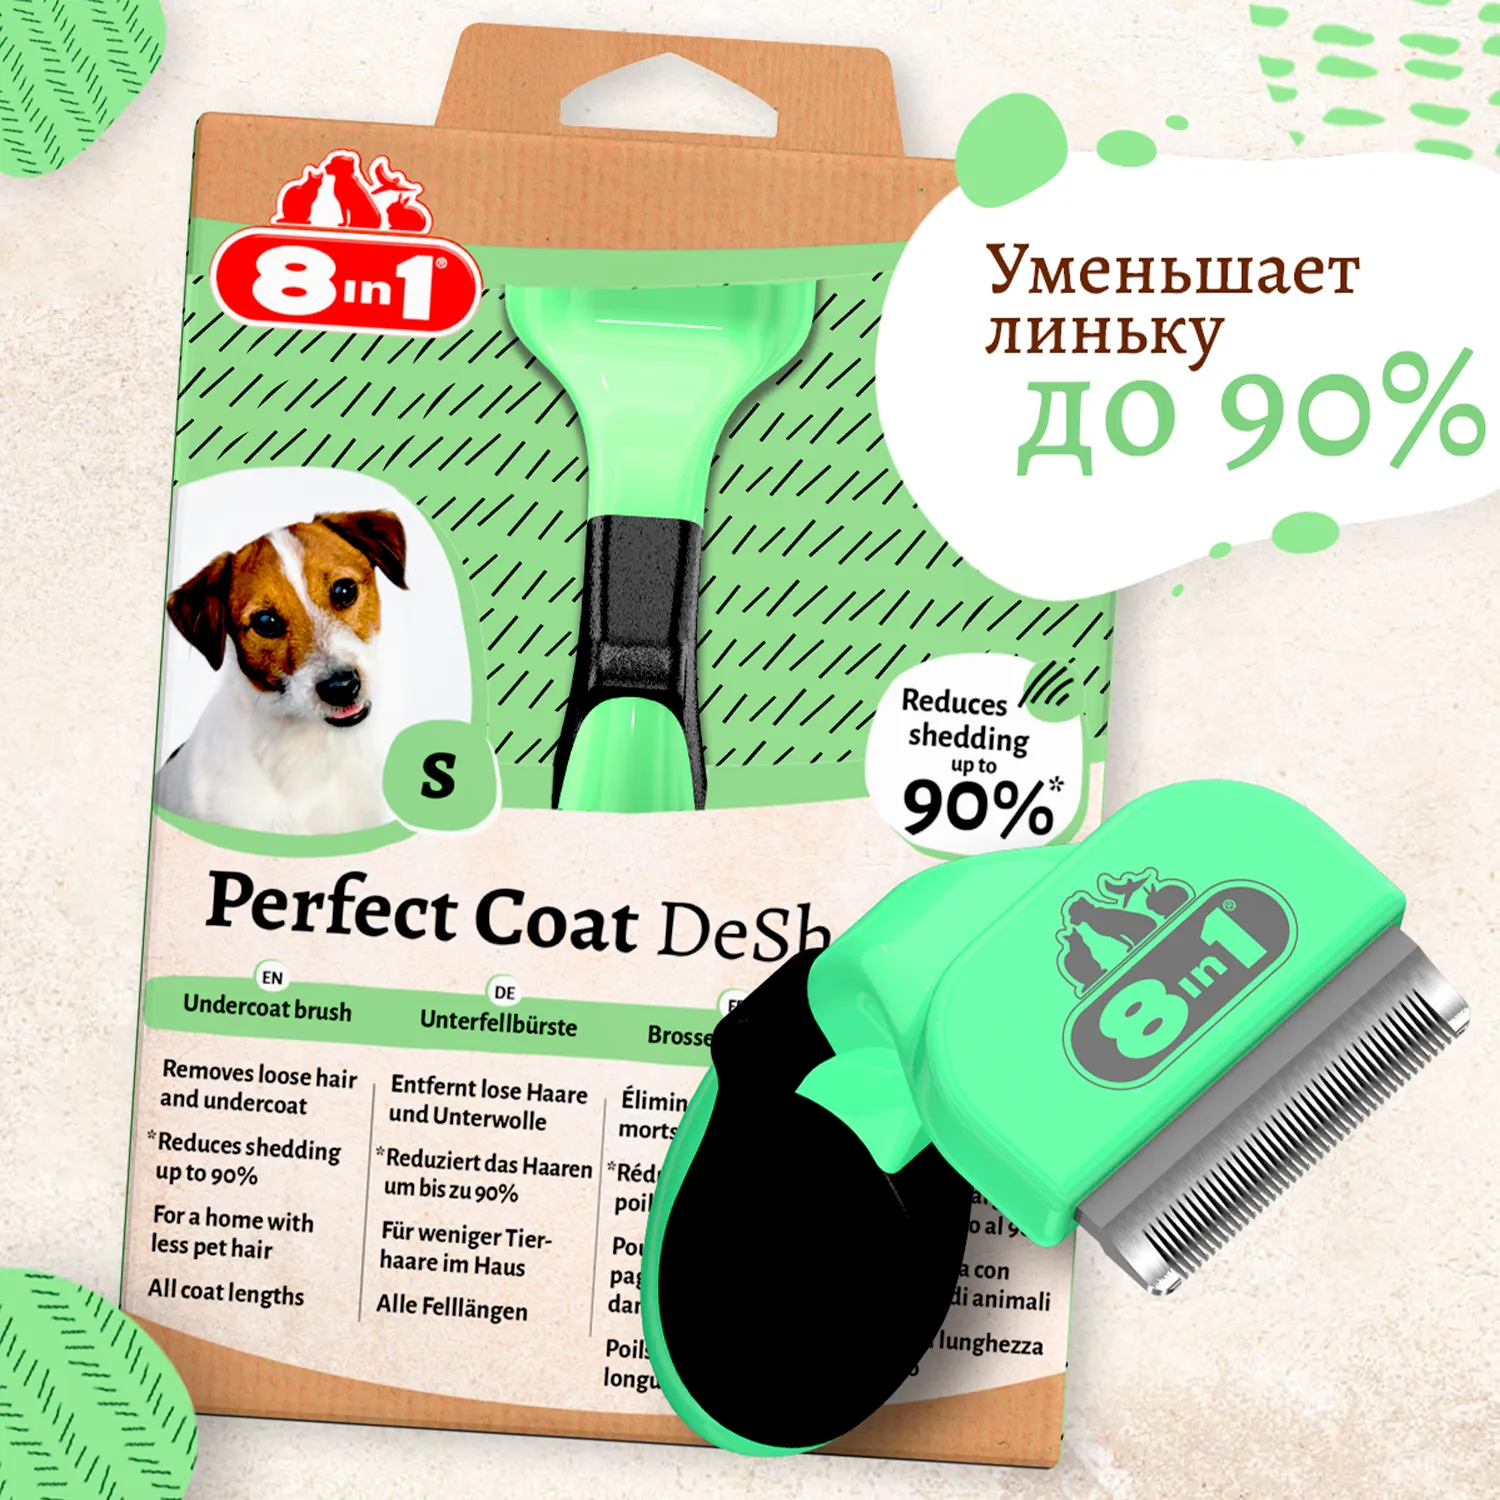 Дешеддер 8in1 Perfect Coat для собак мелких пород, размер S